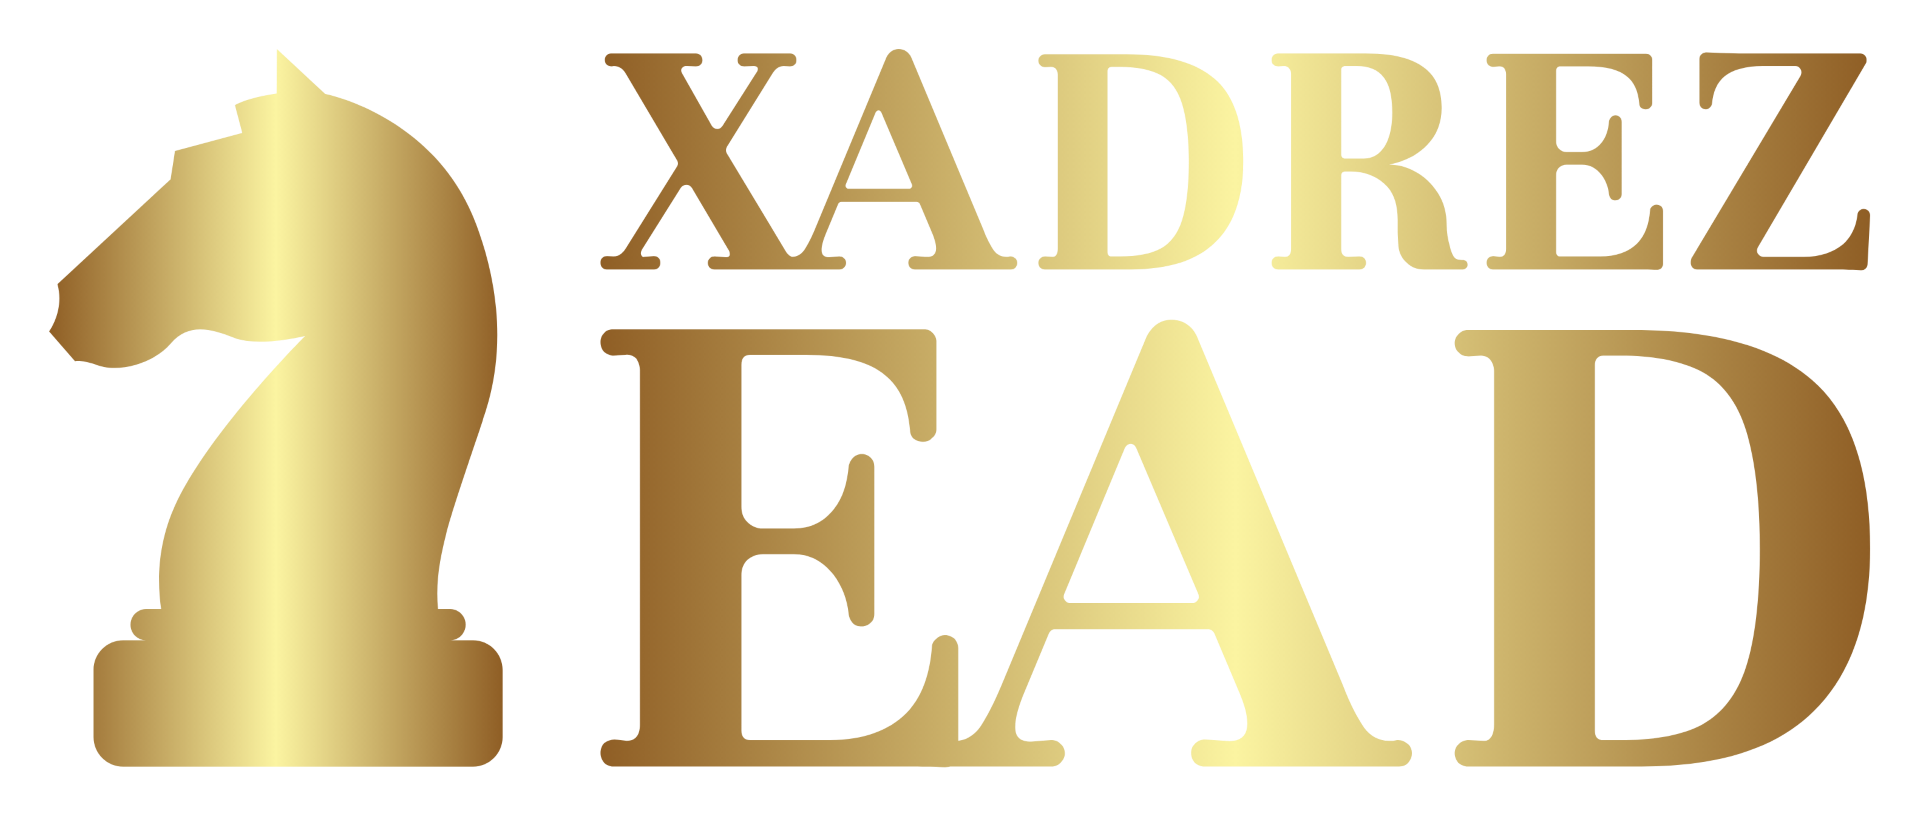 CBXEAD - Portal de Educação a Distância em Xadrez